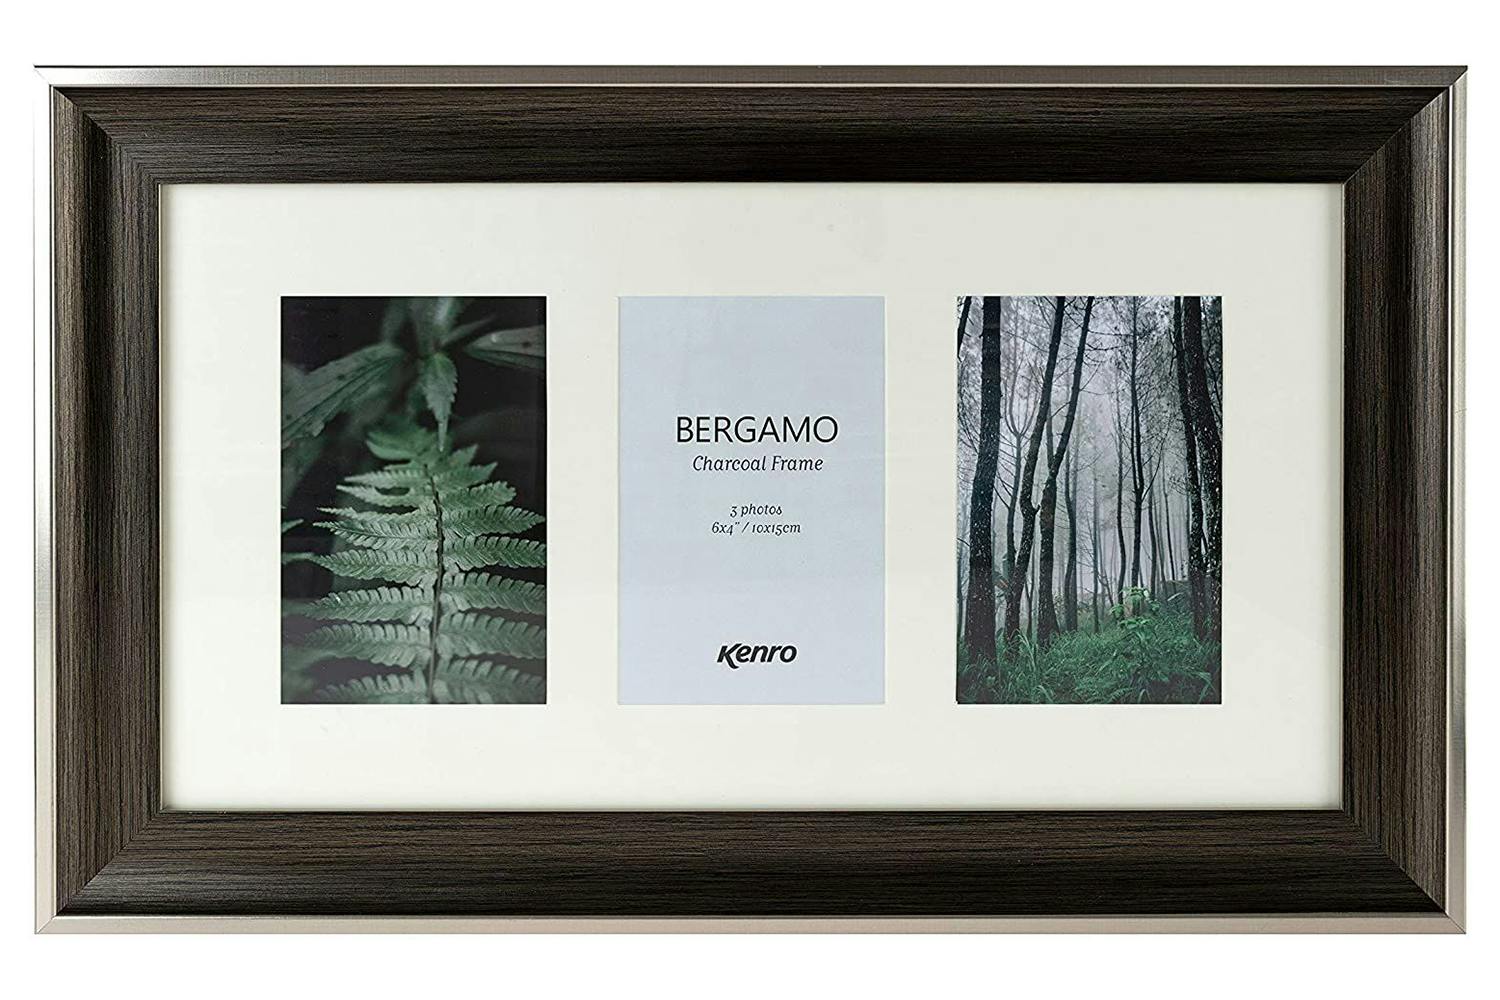 Kenro Bergamo Charcoal Series 6x4"/10x15cm Photo Frame | 3 Photos